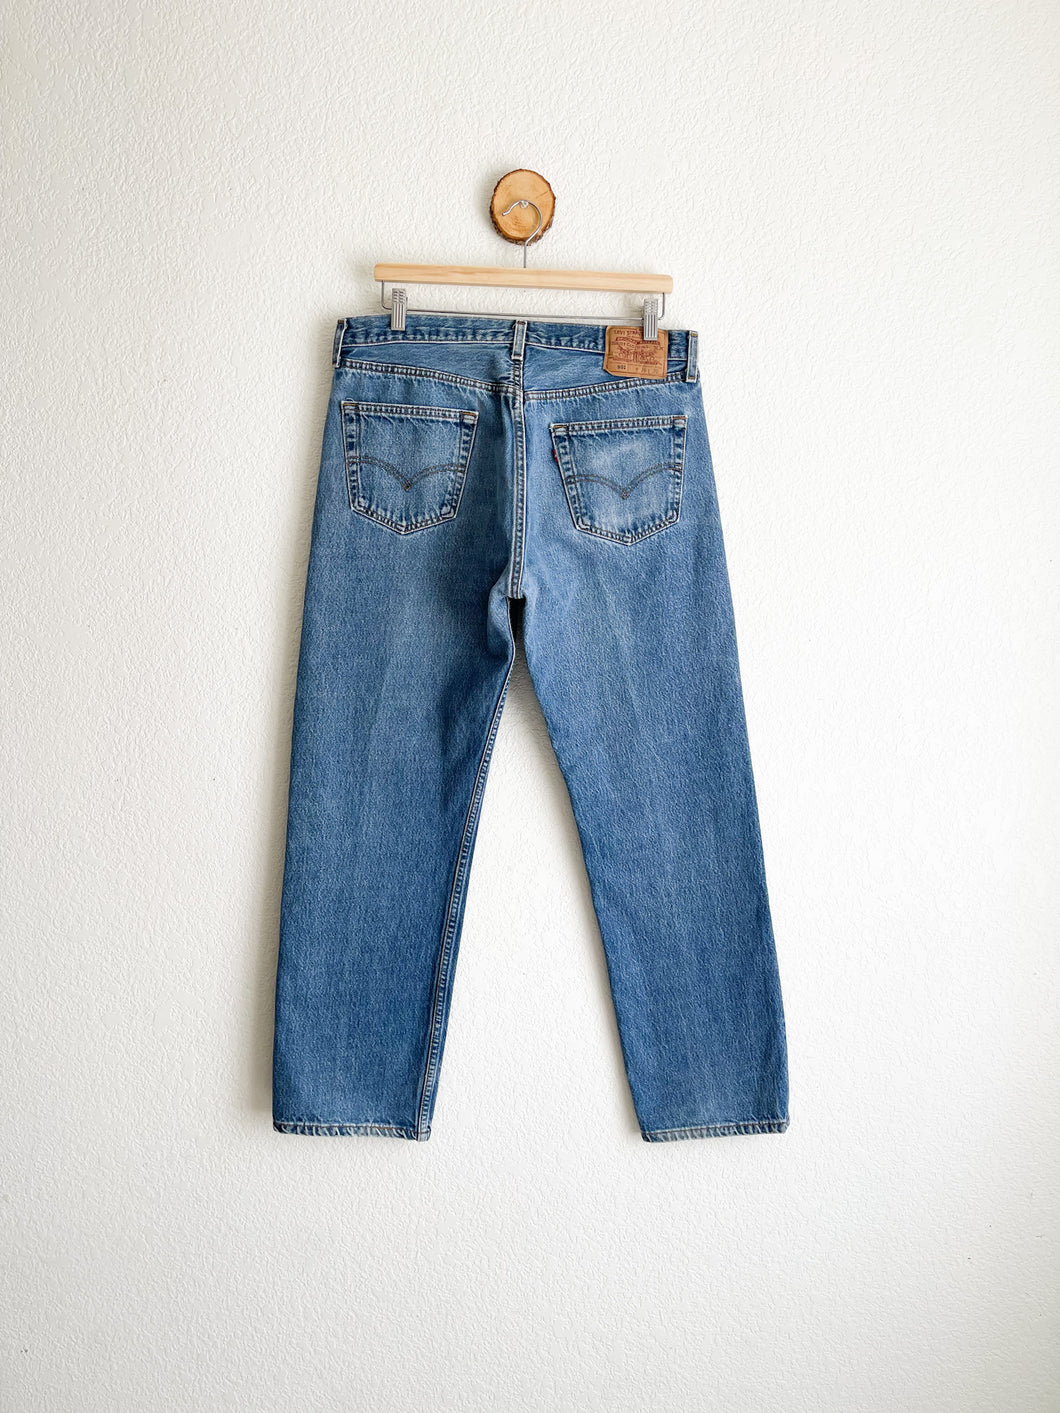 Vintage Levi's 501 Jeans - 33.5